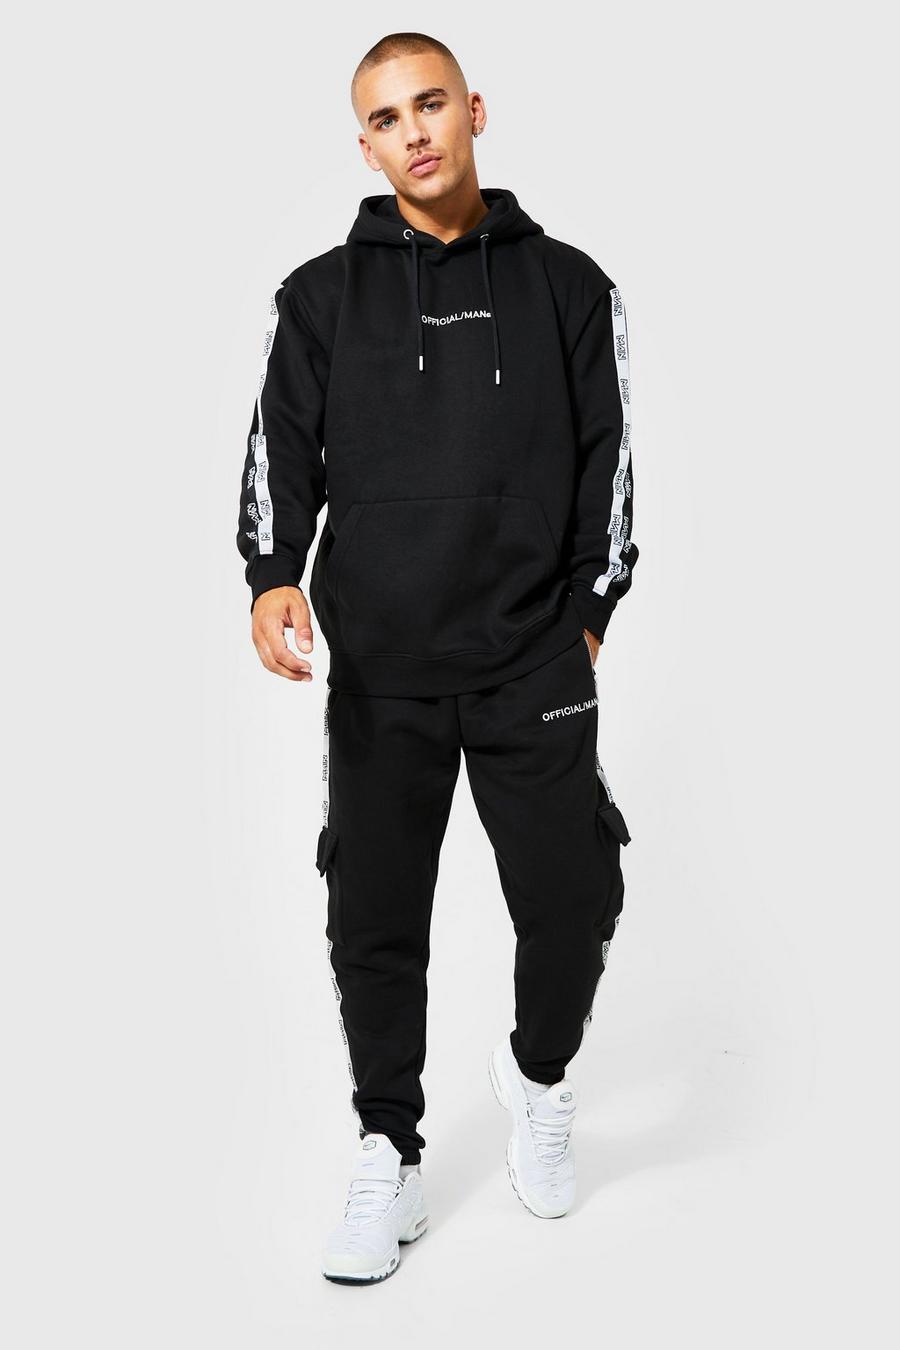 שחור חליפת טרנינג מכנסי דגמ"ח וקפוצ׳ון עם כיתוב Official Man ופס image number 1